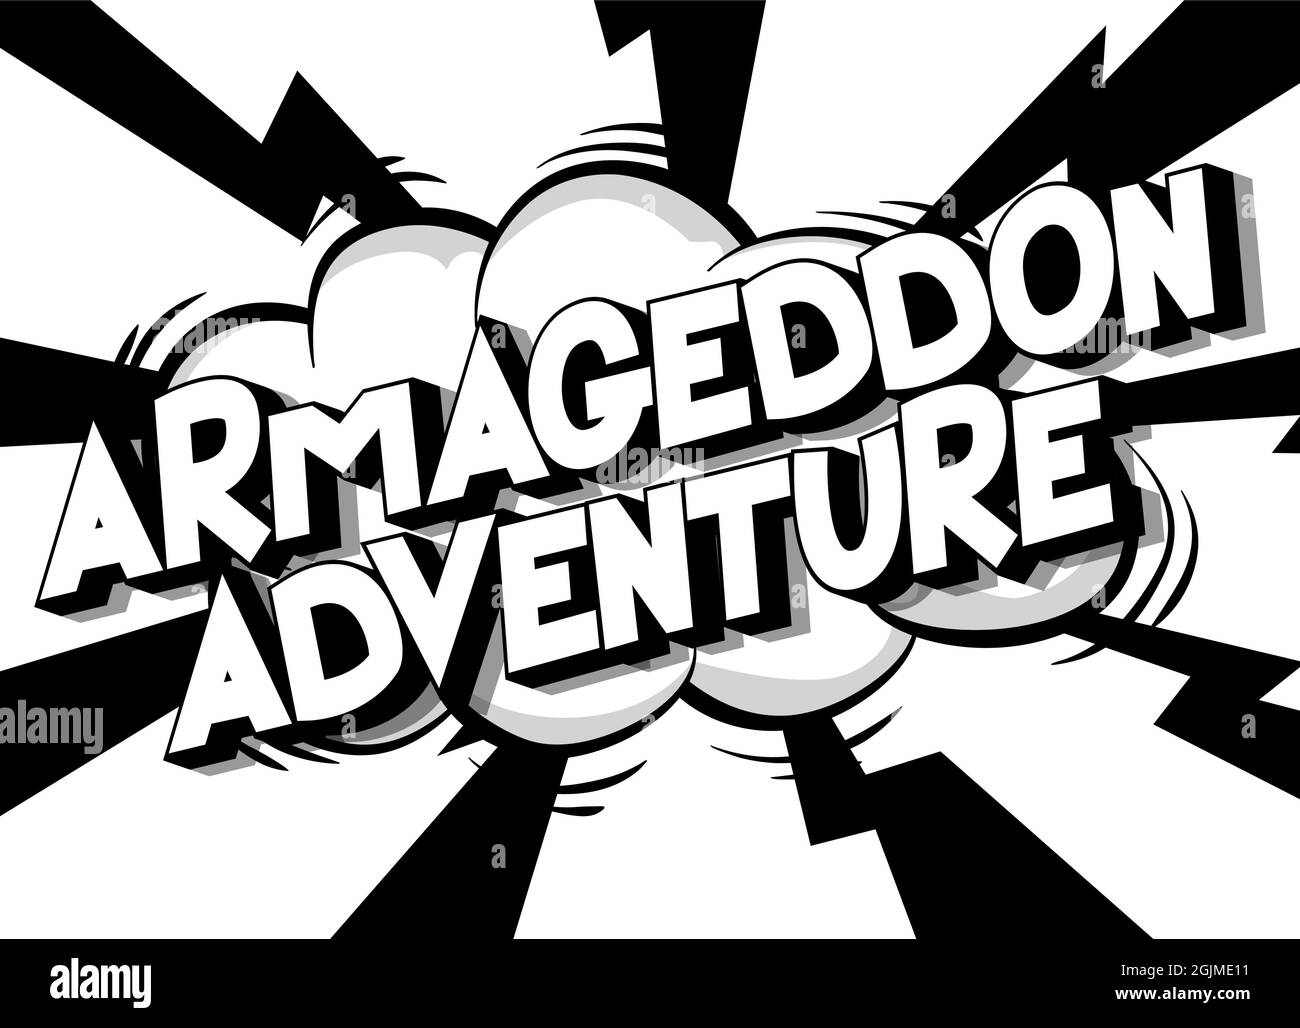 Armageddon Avventura. Testo in stile fumetto, tipografia di fumetti retrò, illustrazione vettoriale di arte pop. Illustrazione Vettoriale